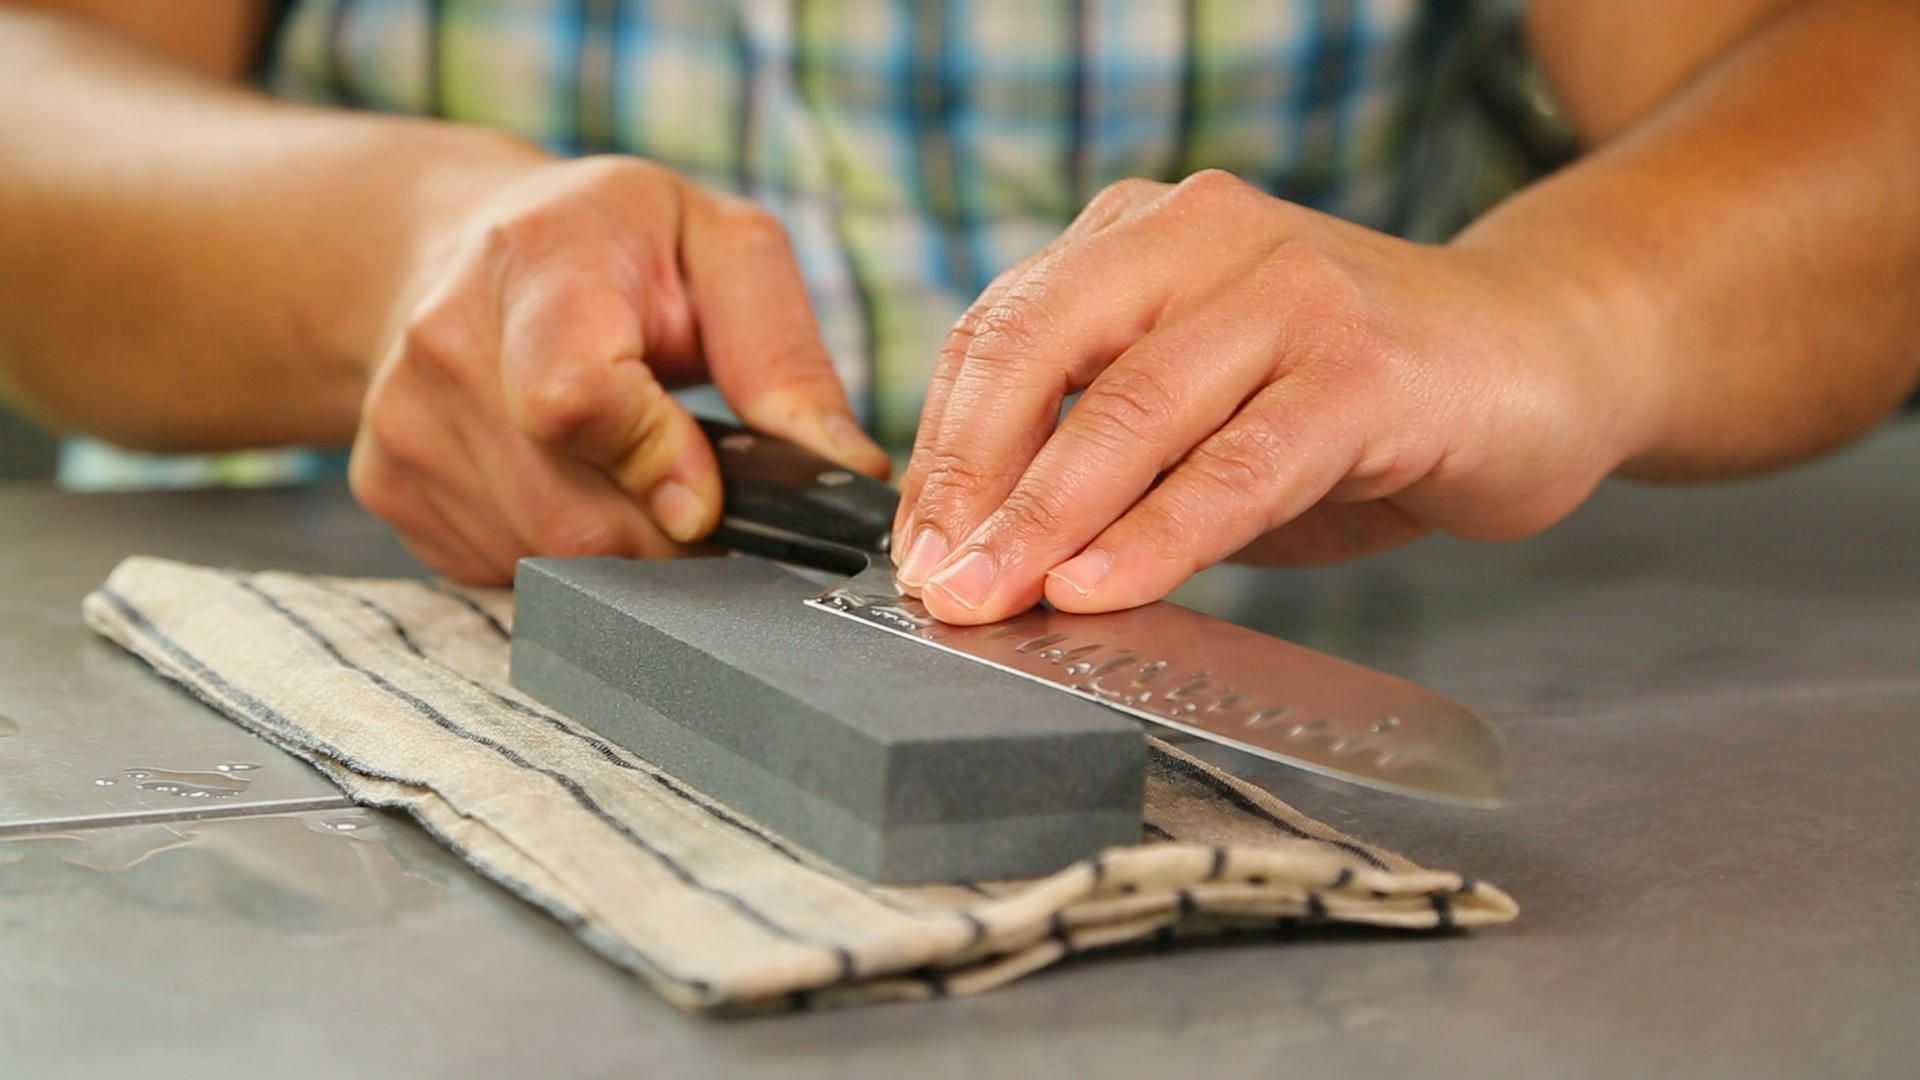 Профессиональные ручные ножницы по металлу. какие они?